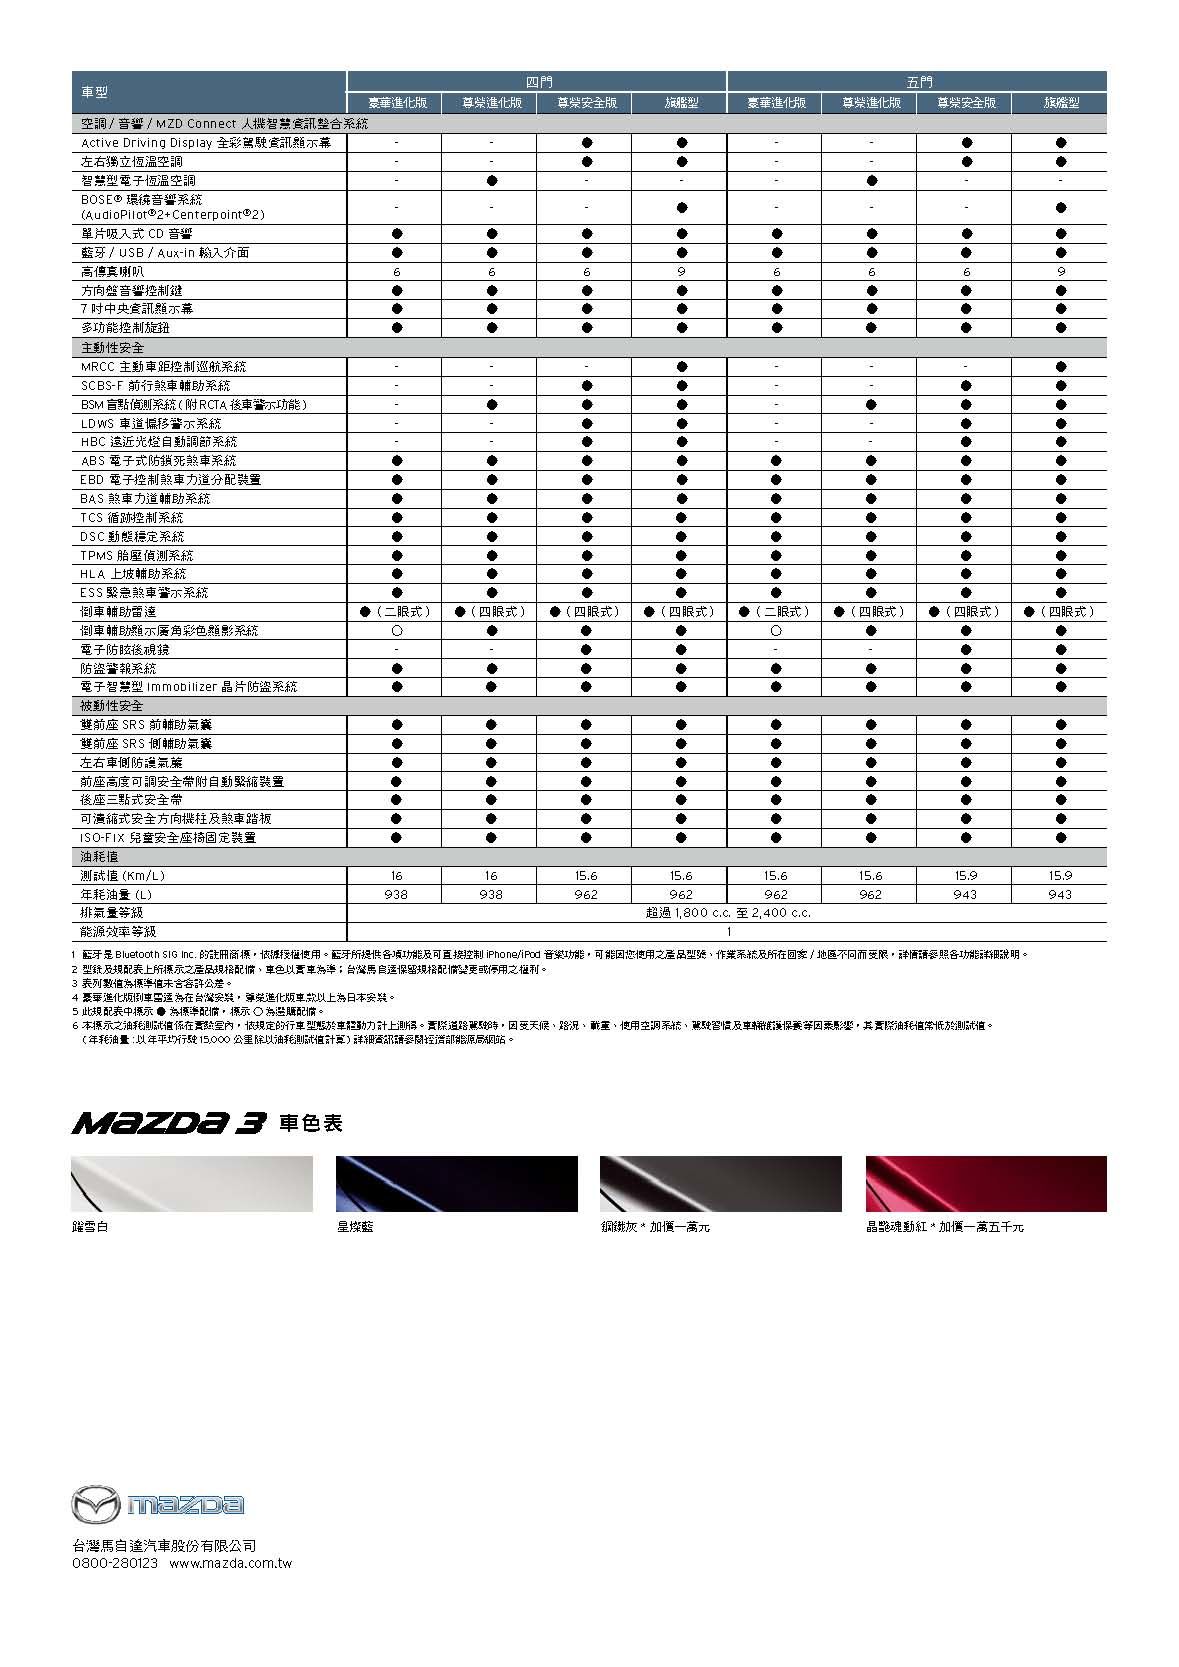 2018年式Mazda3規格配備表_頁面_2